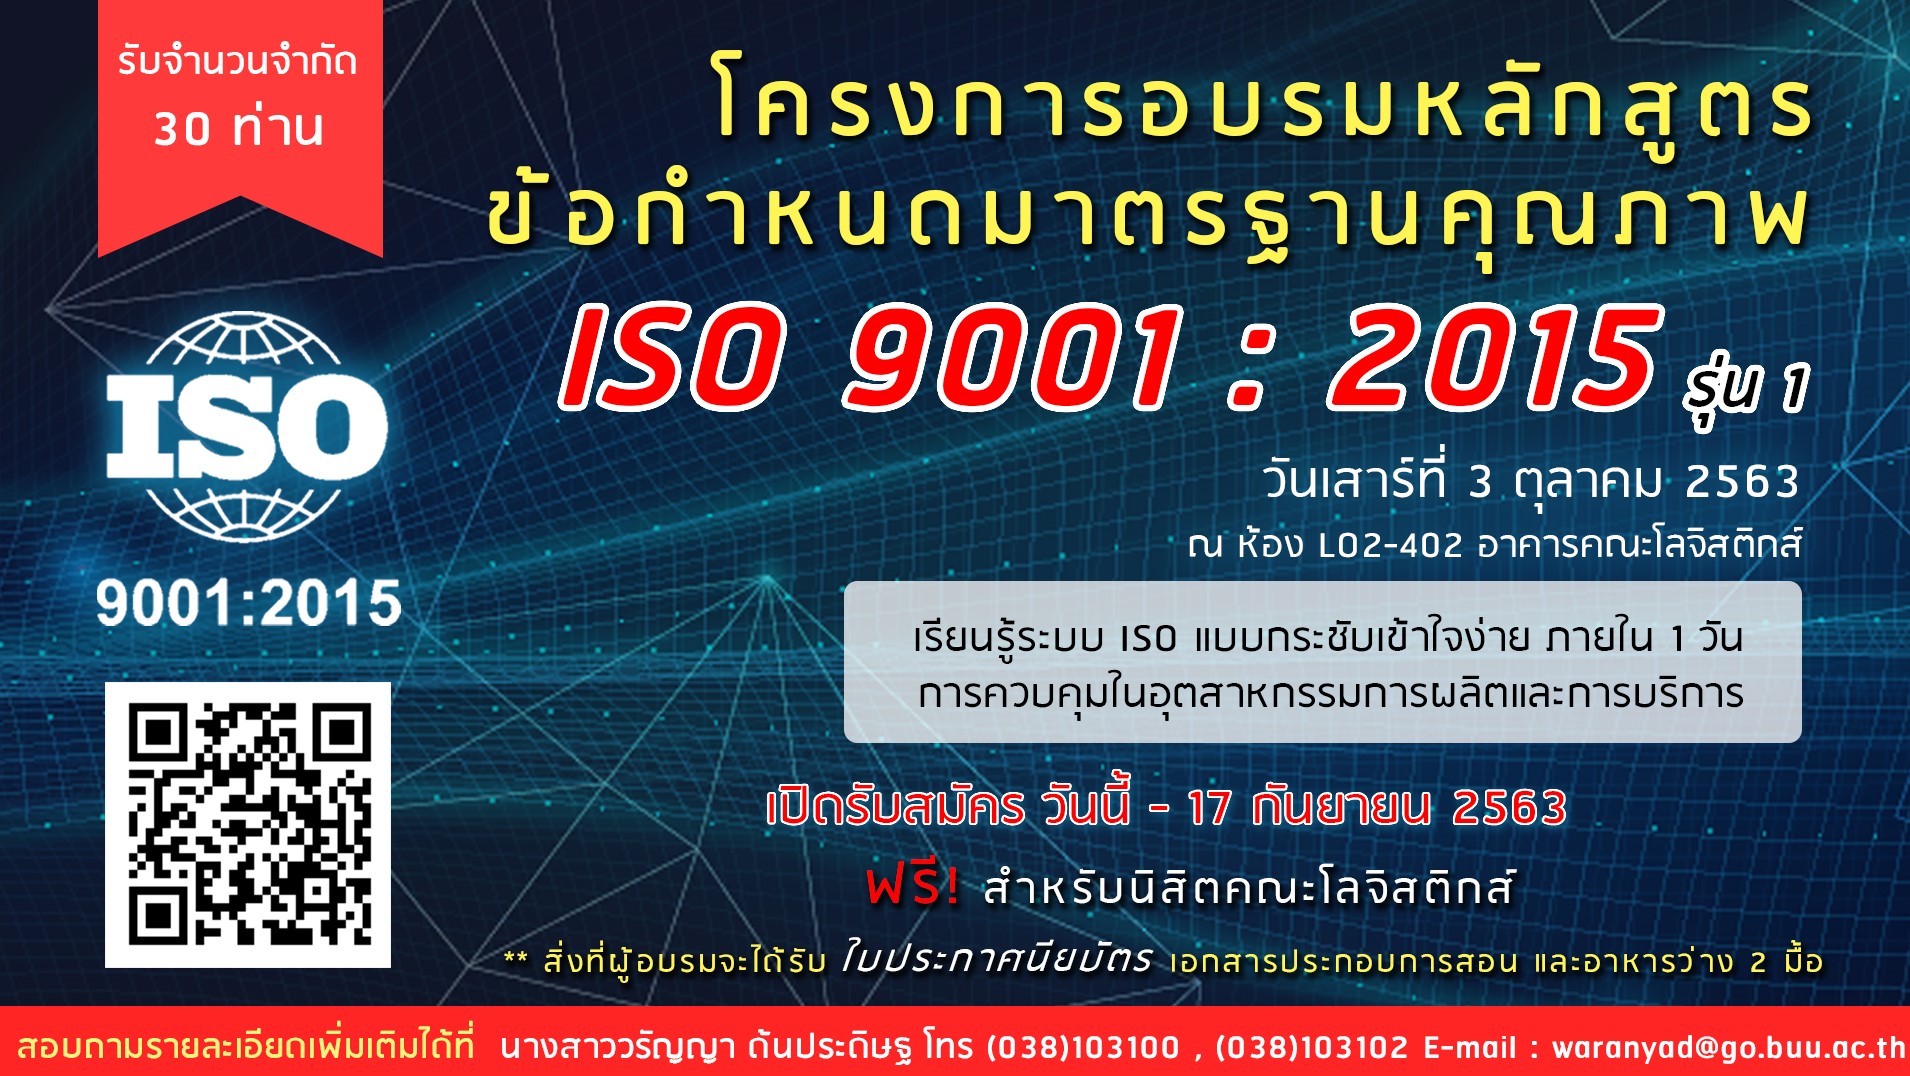 อบรมหลักสูตรข้อกำหนดมาตรฐานคุณภาพ ISO 9001 : 2015